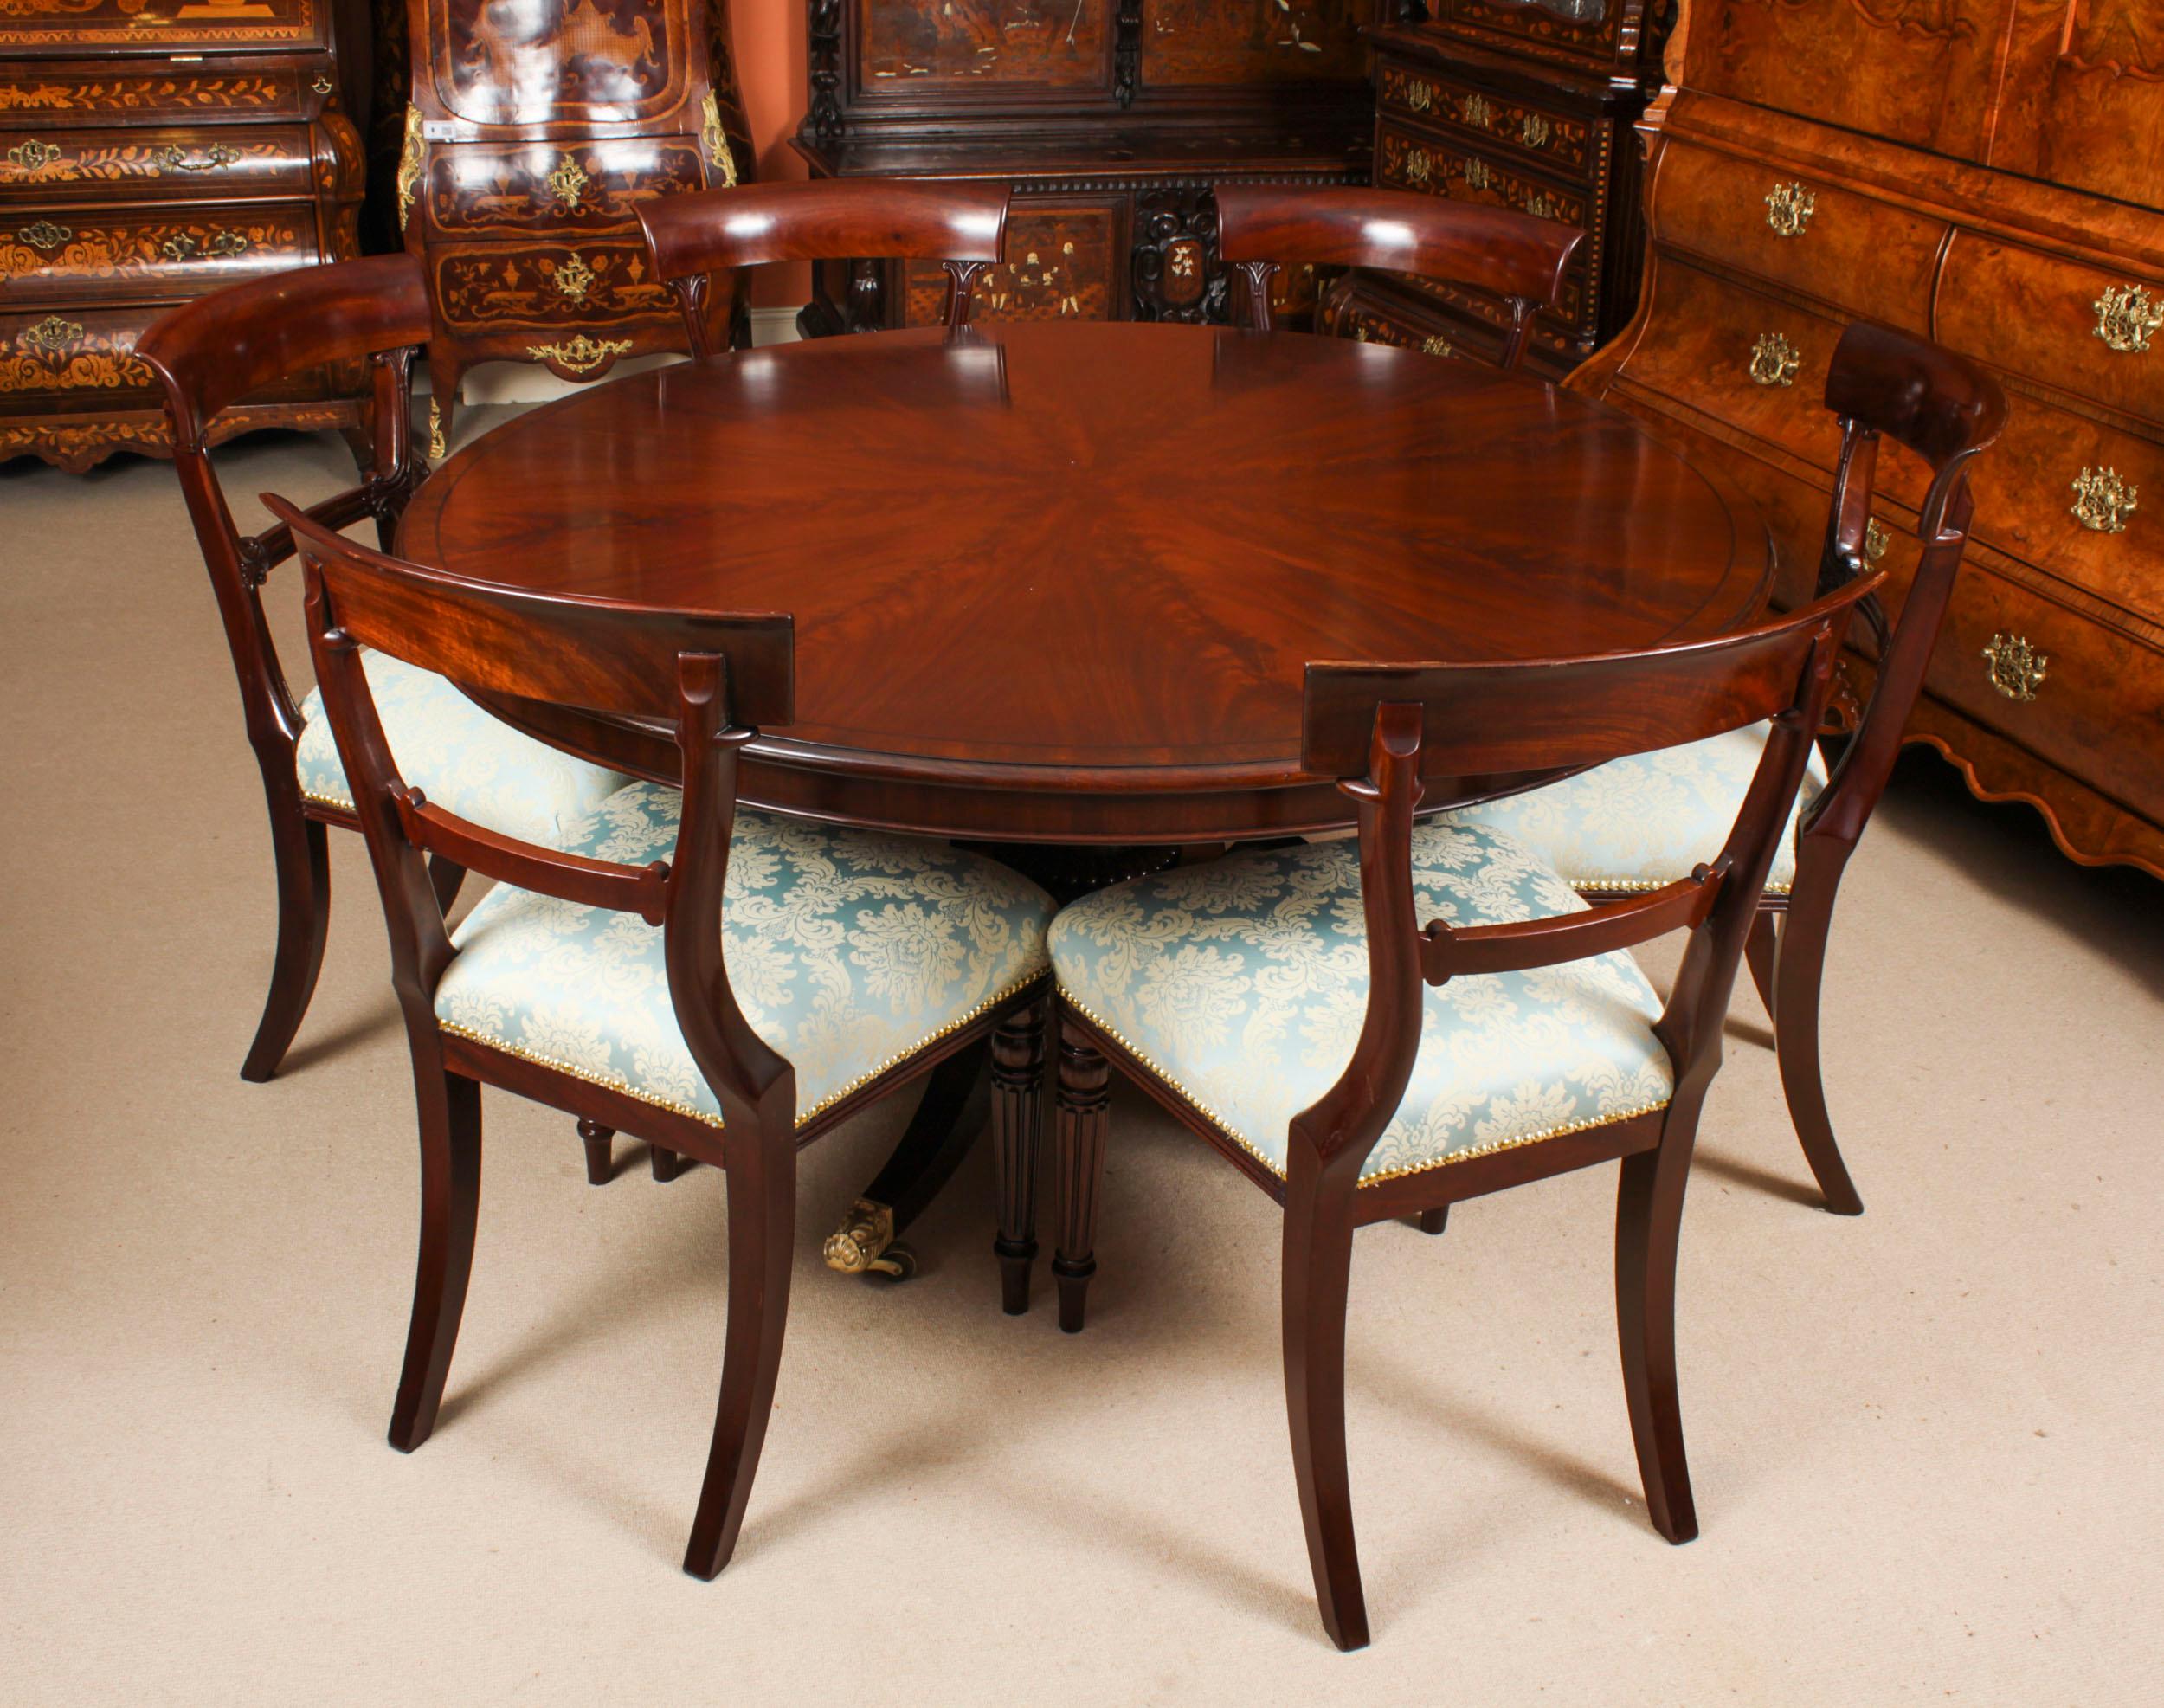 Eine erstaunliche antike William IV Frühstückstisch / loo Tisch in der Art von Gillows und die passende Reihe von sechs William IV Esszimmerstühle, alle um 1830 in Datum.

Die schöne runde Platte aus geflammtem Mahagoni sitzt auf einer